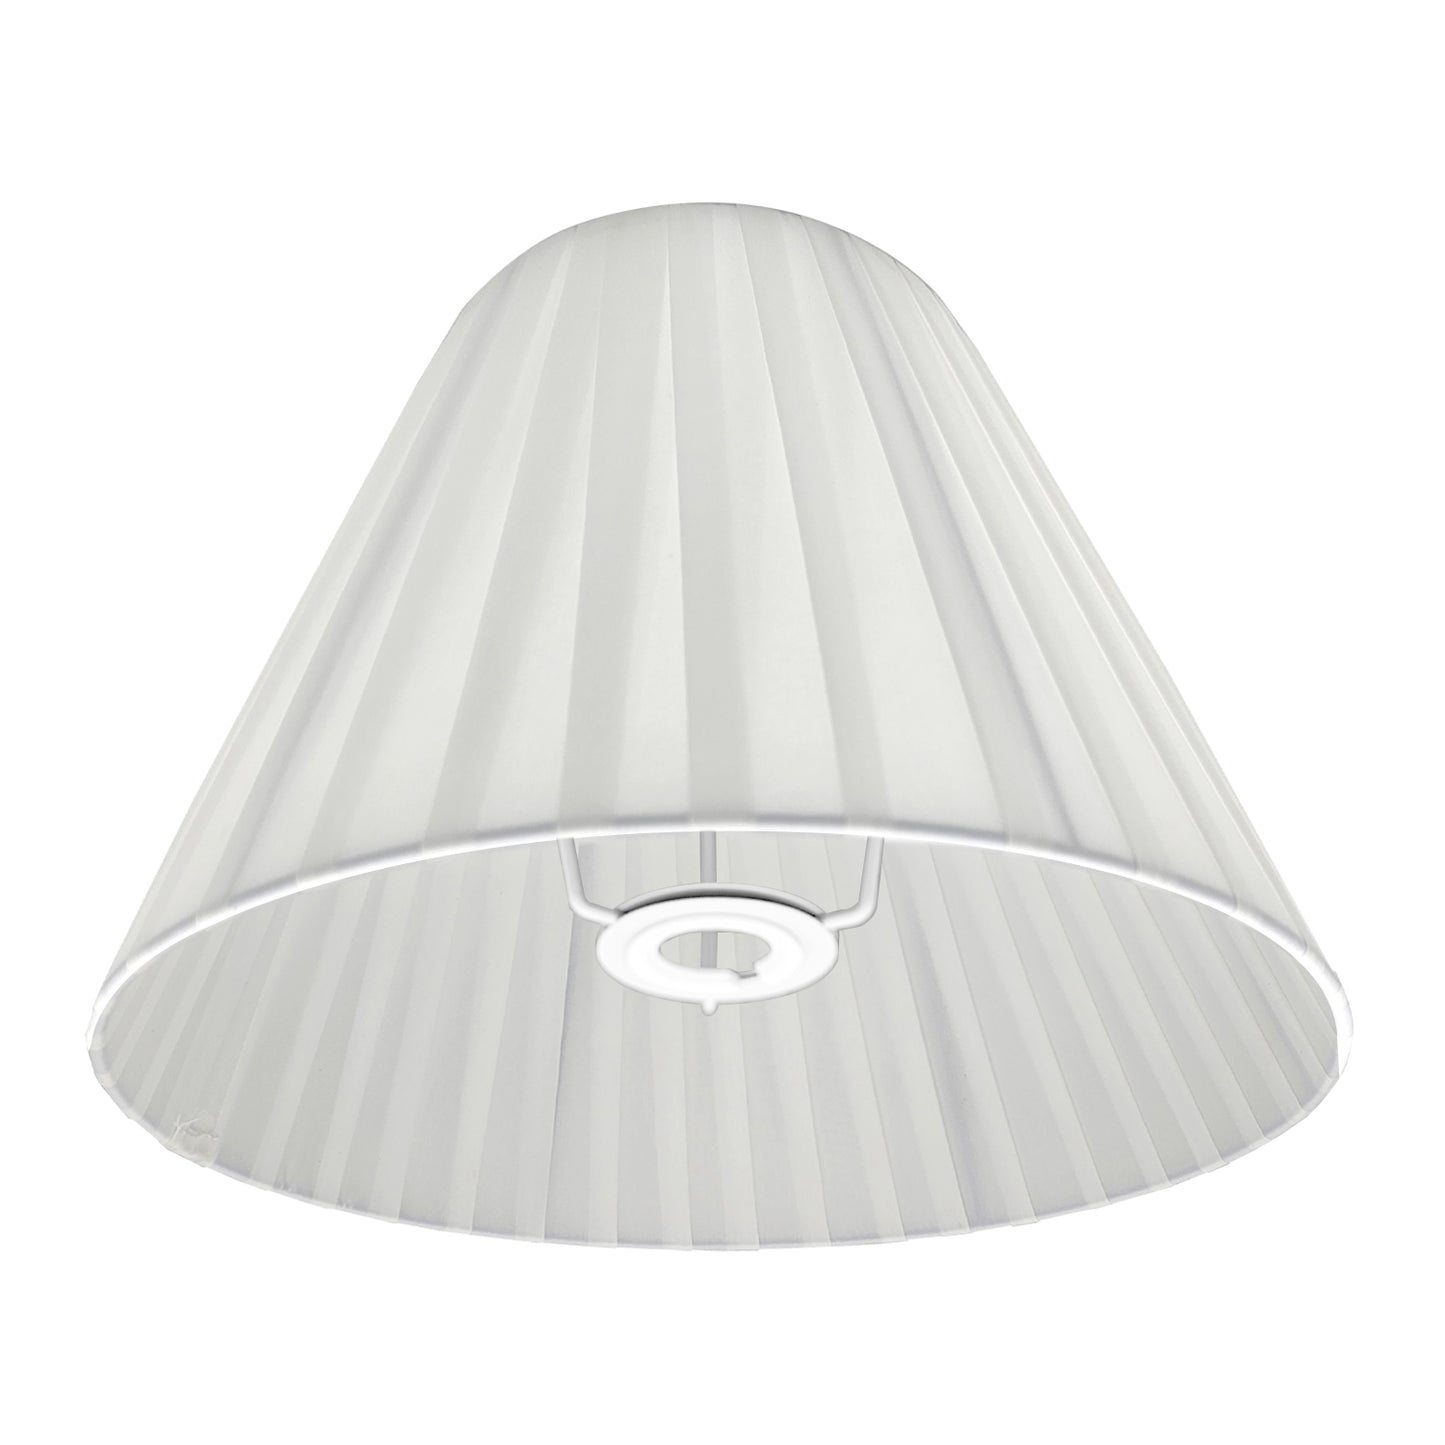 Weiß Moderner Coolie Lampenschirm aus Stoff~2743